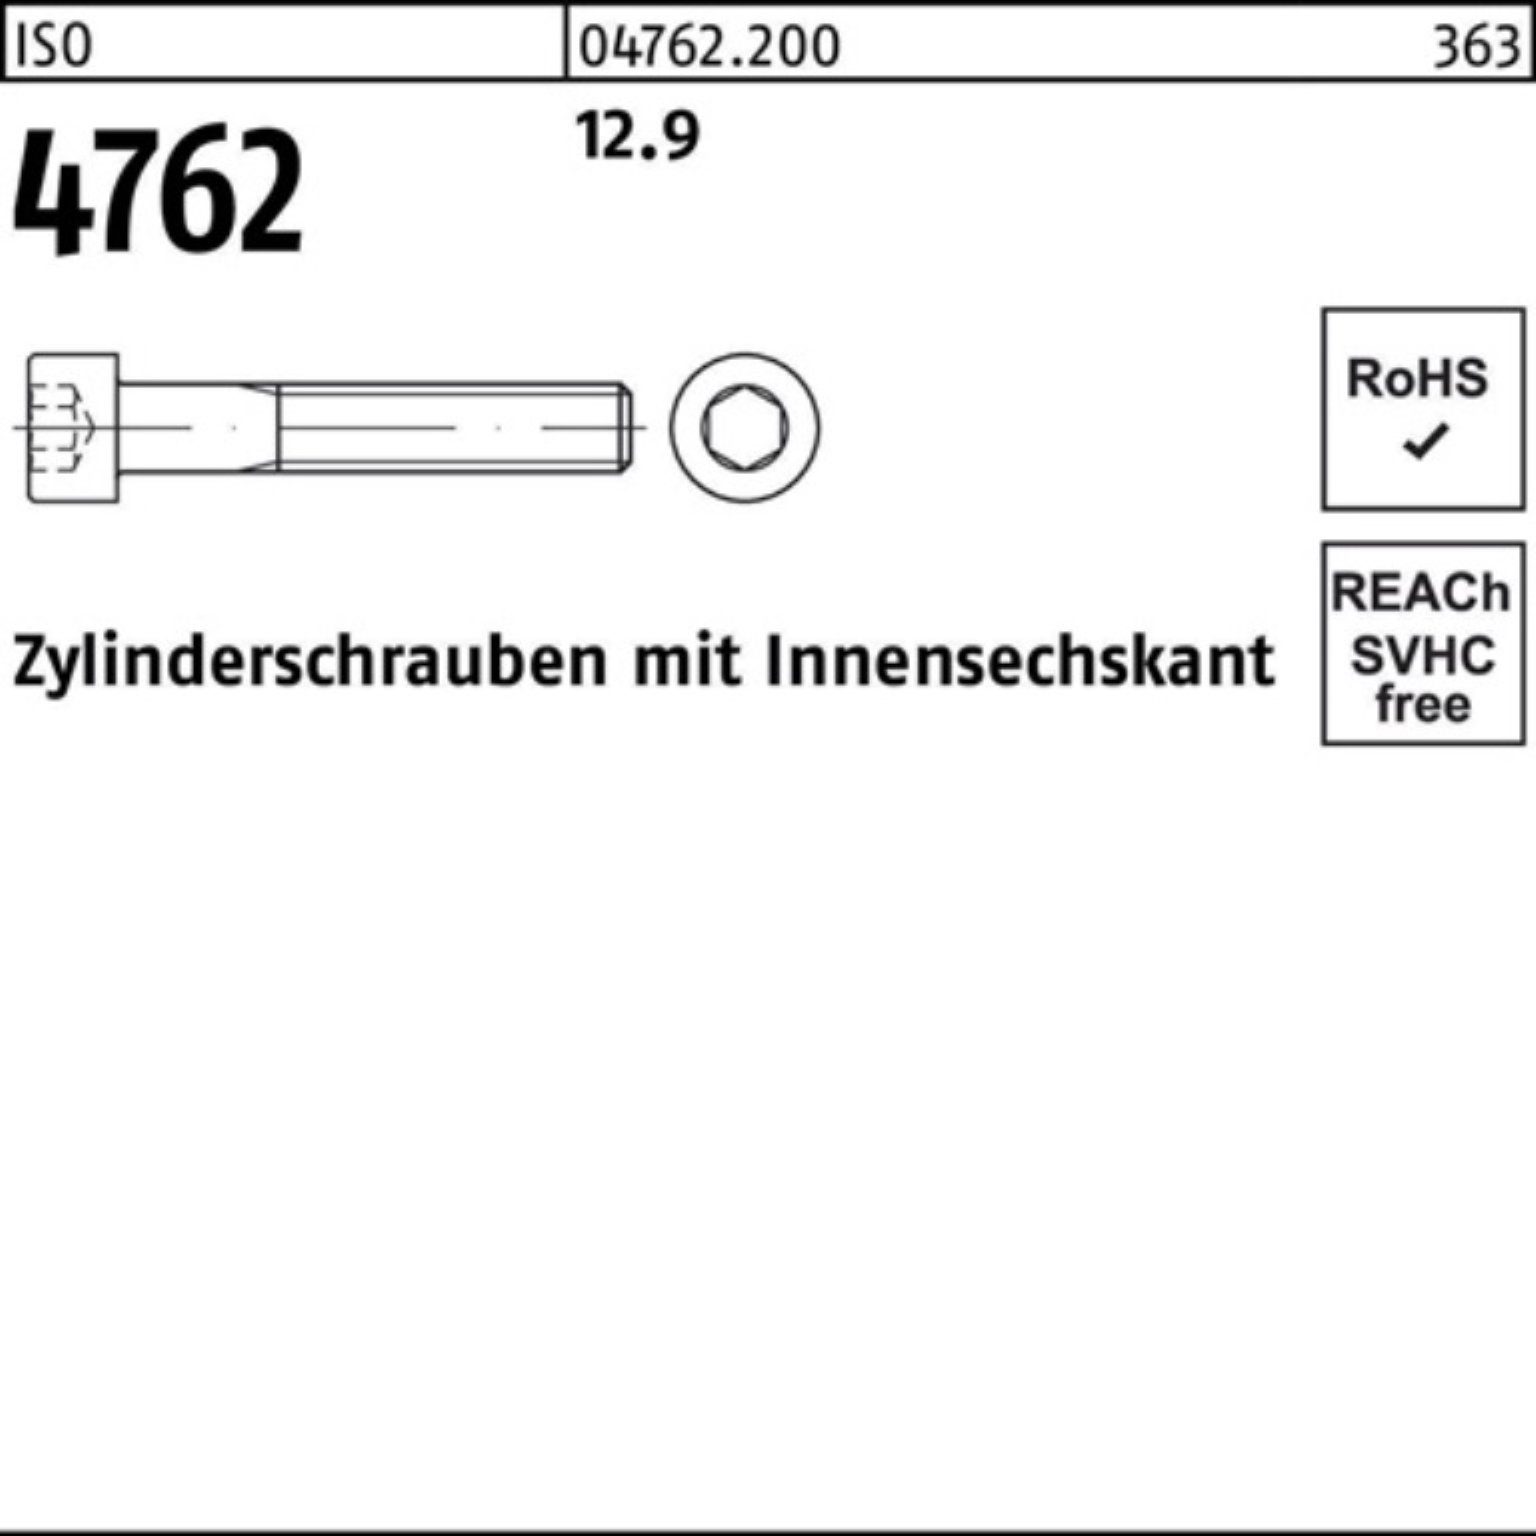 Zylinderschraube 12.9 M14x Zylinderschraube Innen-6kt 100er 4762 50 Stück Pack Reyher 130 ISO